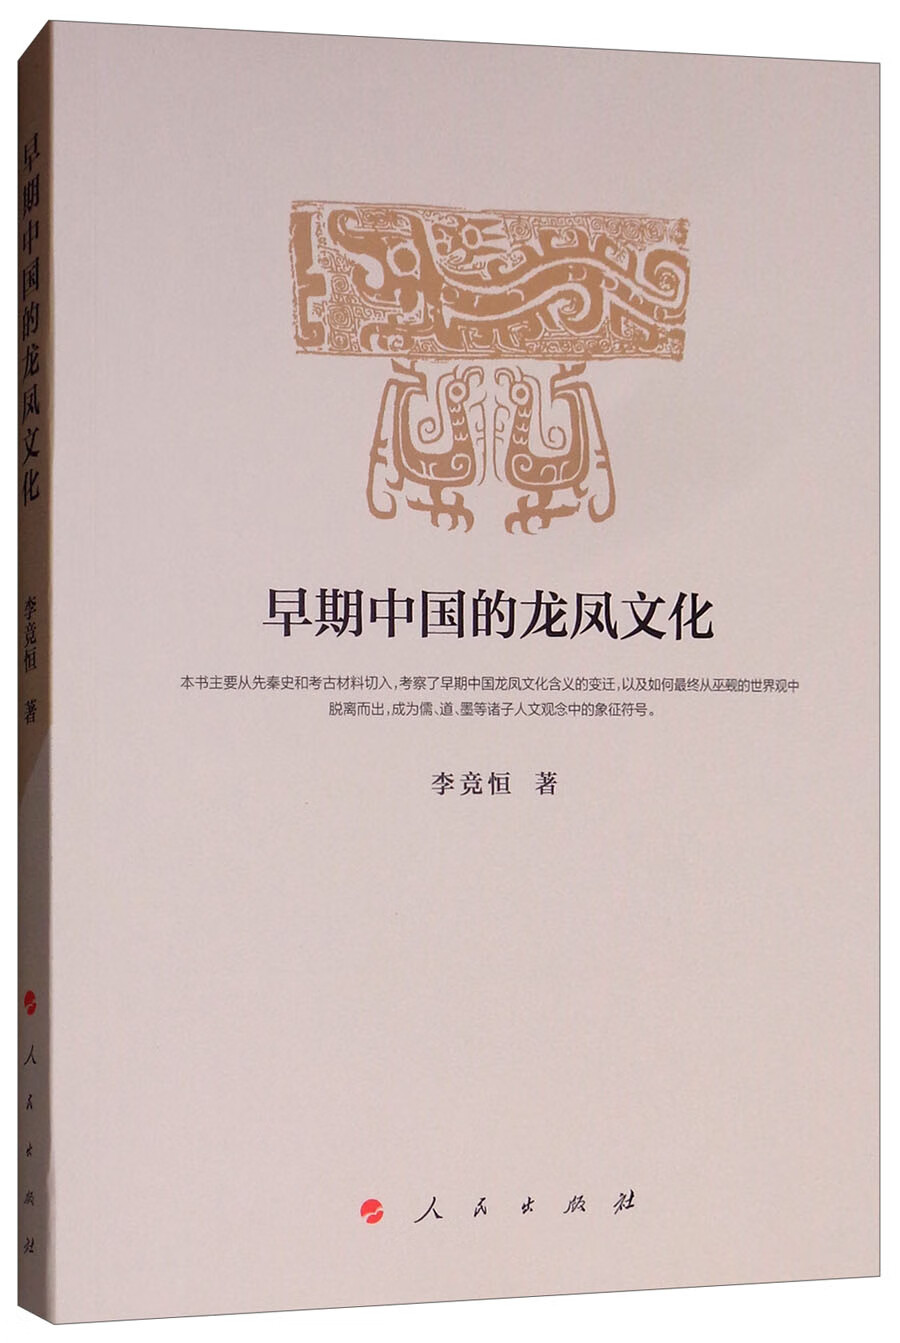 早期中国的龙凤文化 txt格式下载